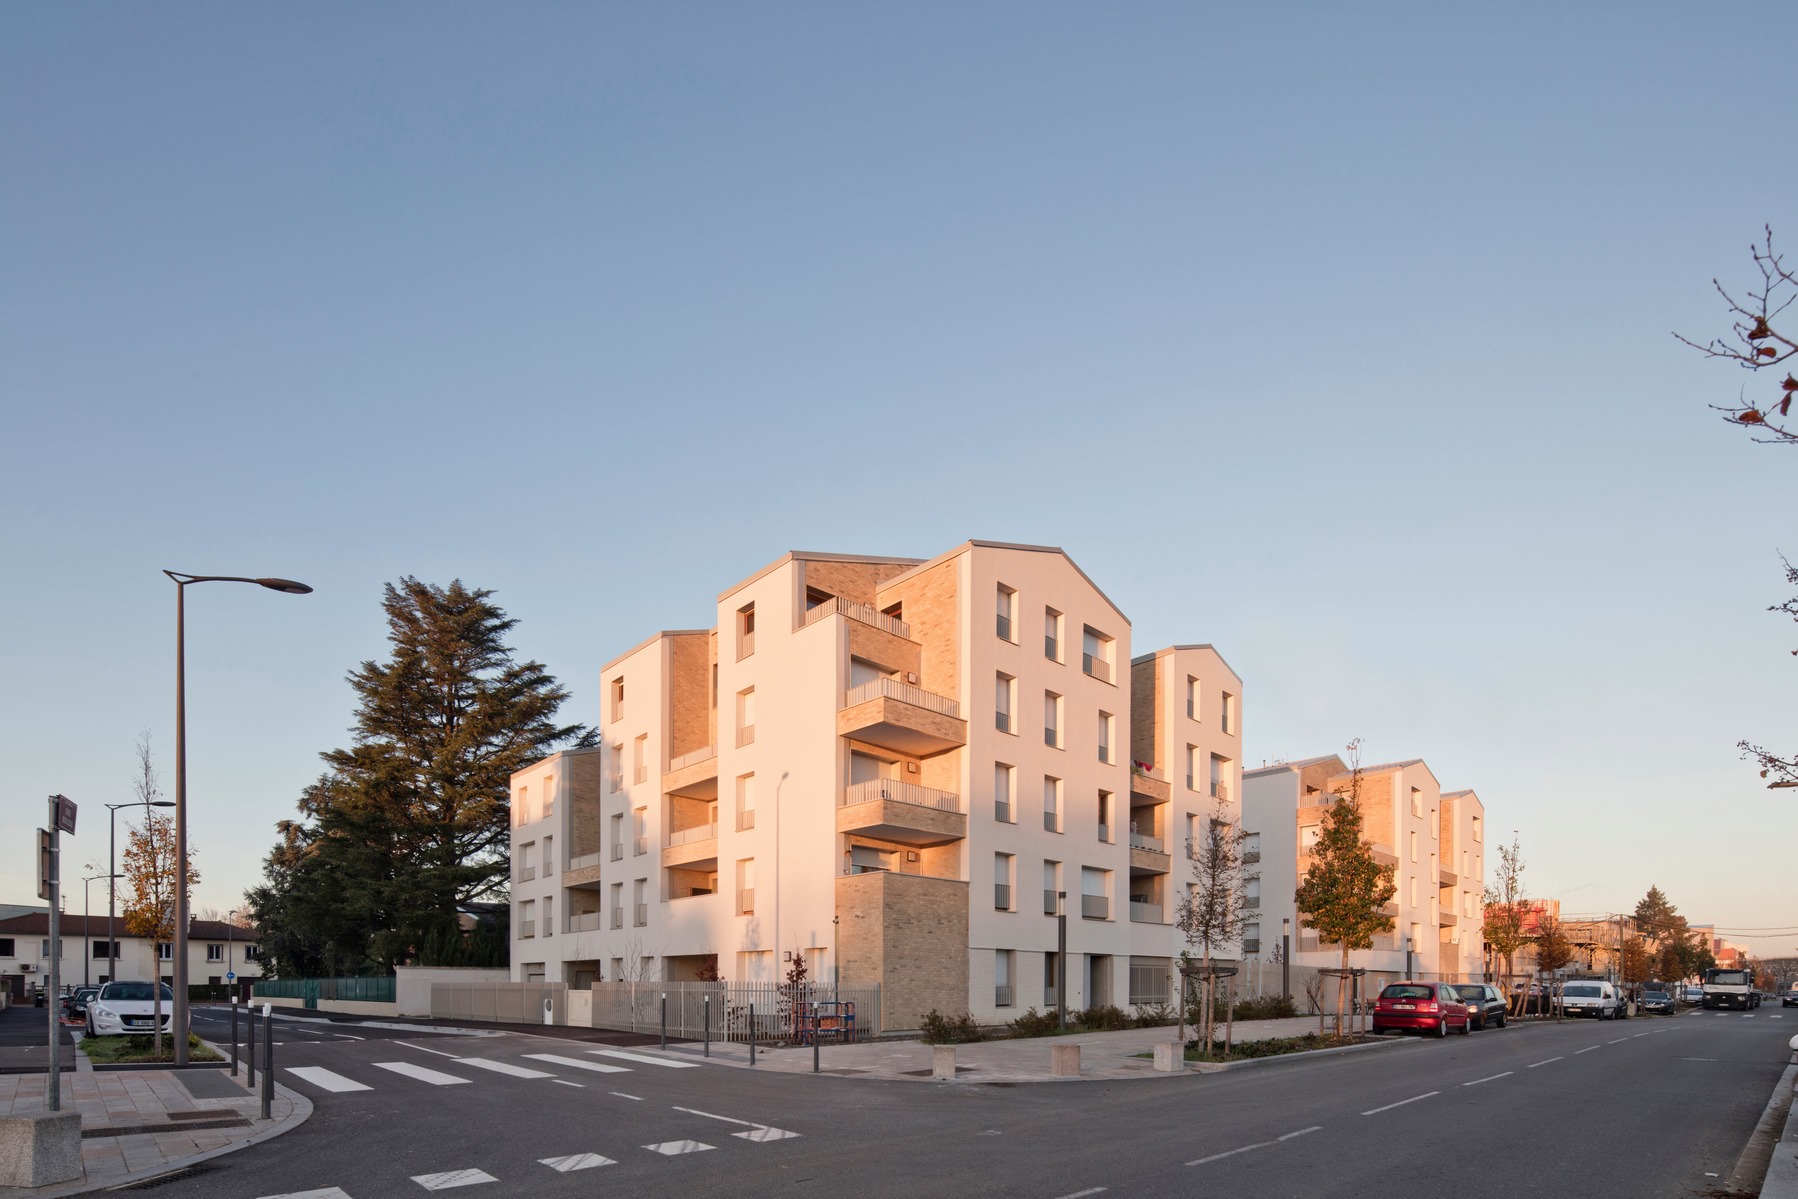 Ilot 3H - Écoquartier Les Ilots Verts - Saint-Priest - Z Architecture